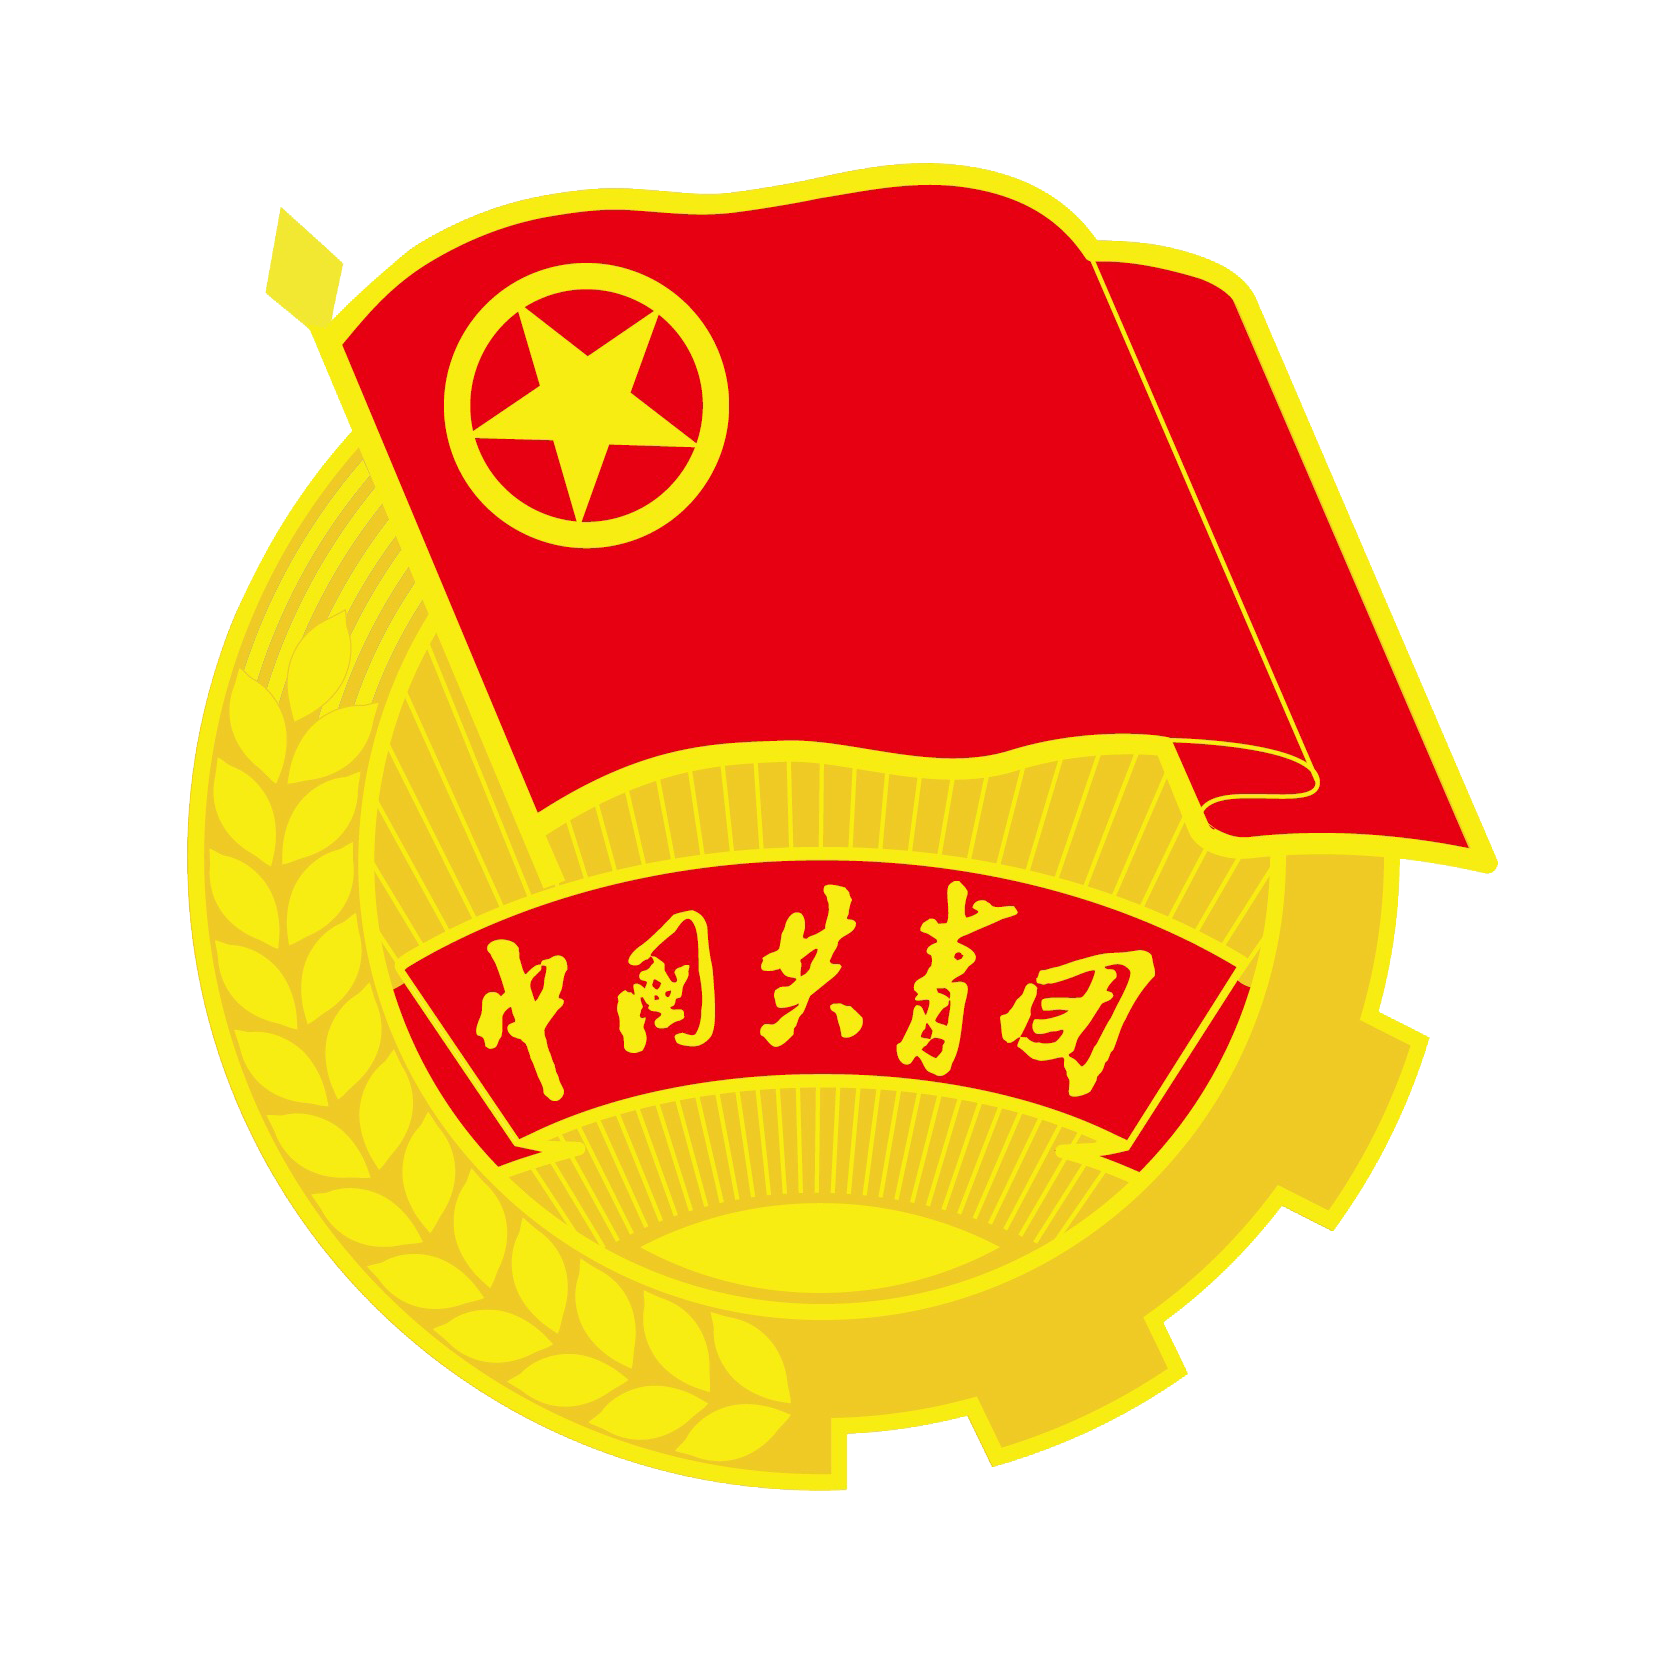 中國共產主義青年團全國代表大會